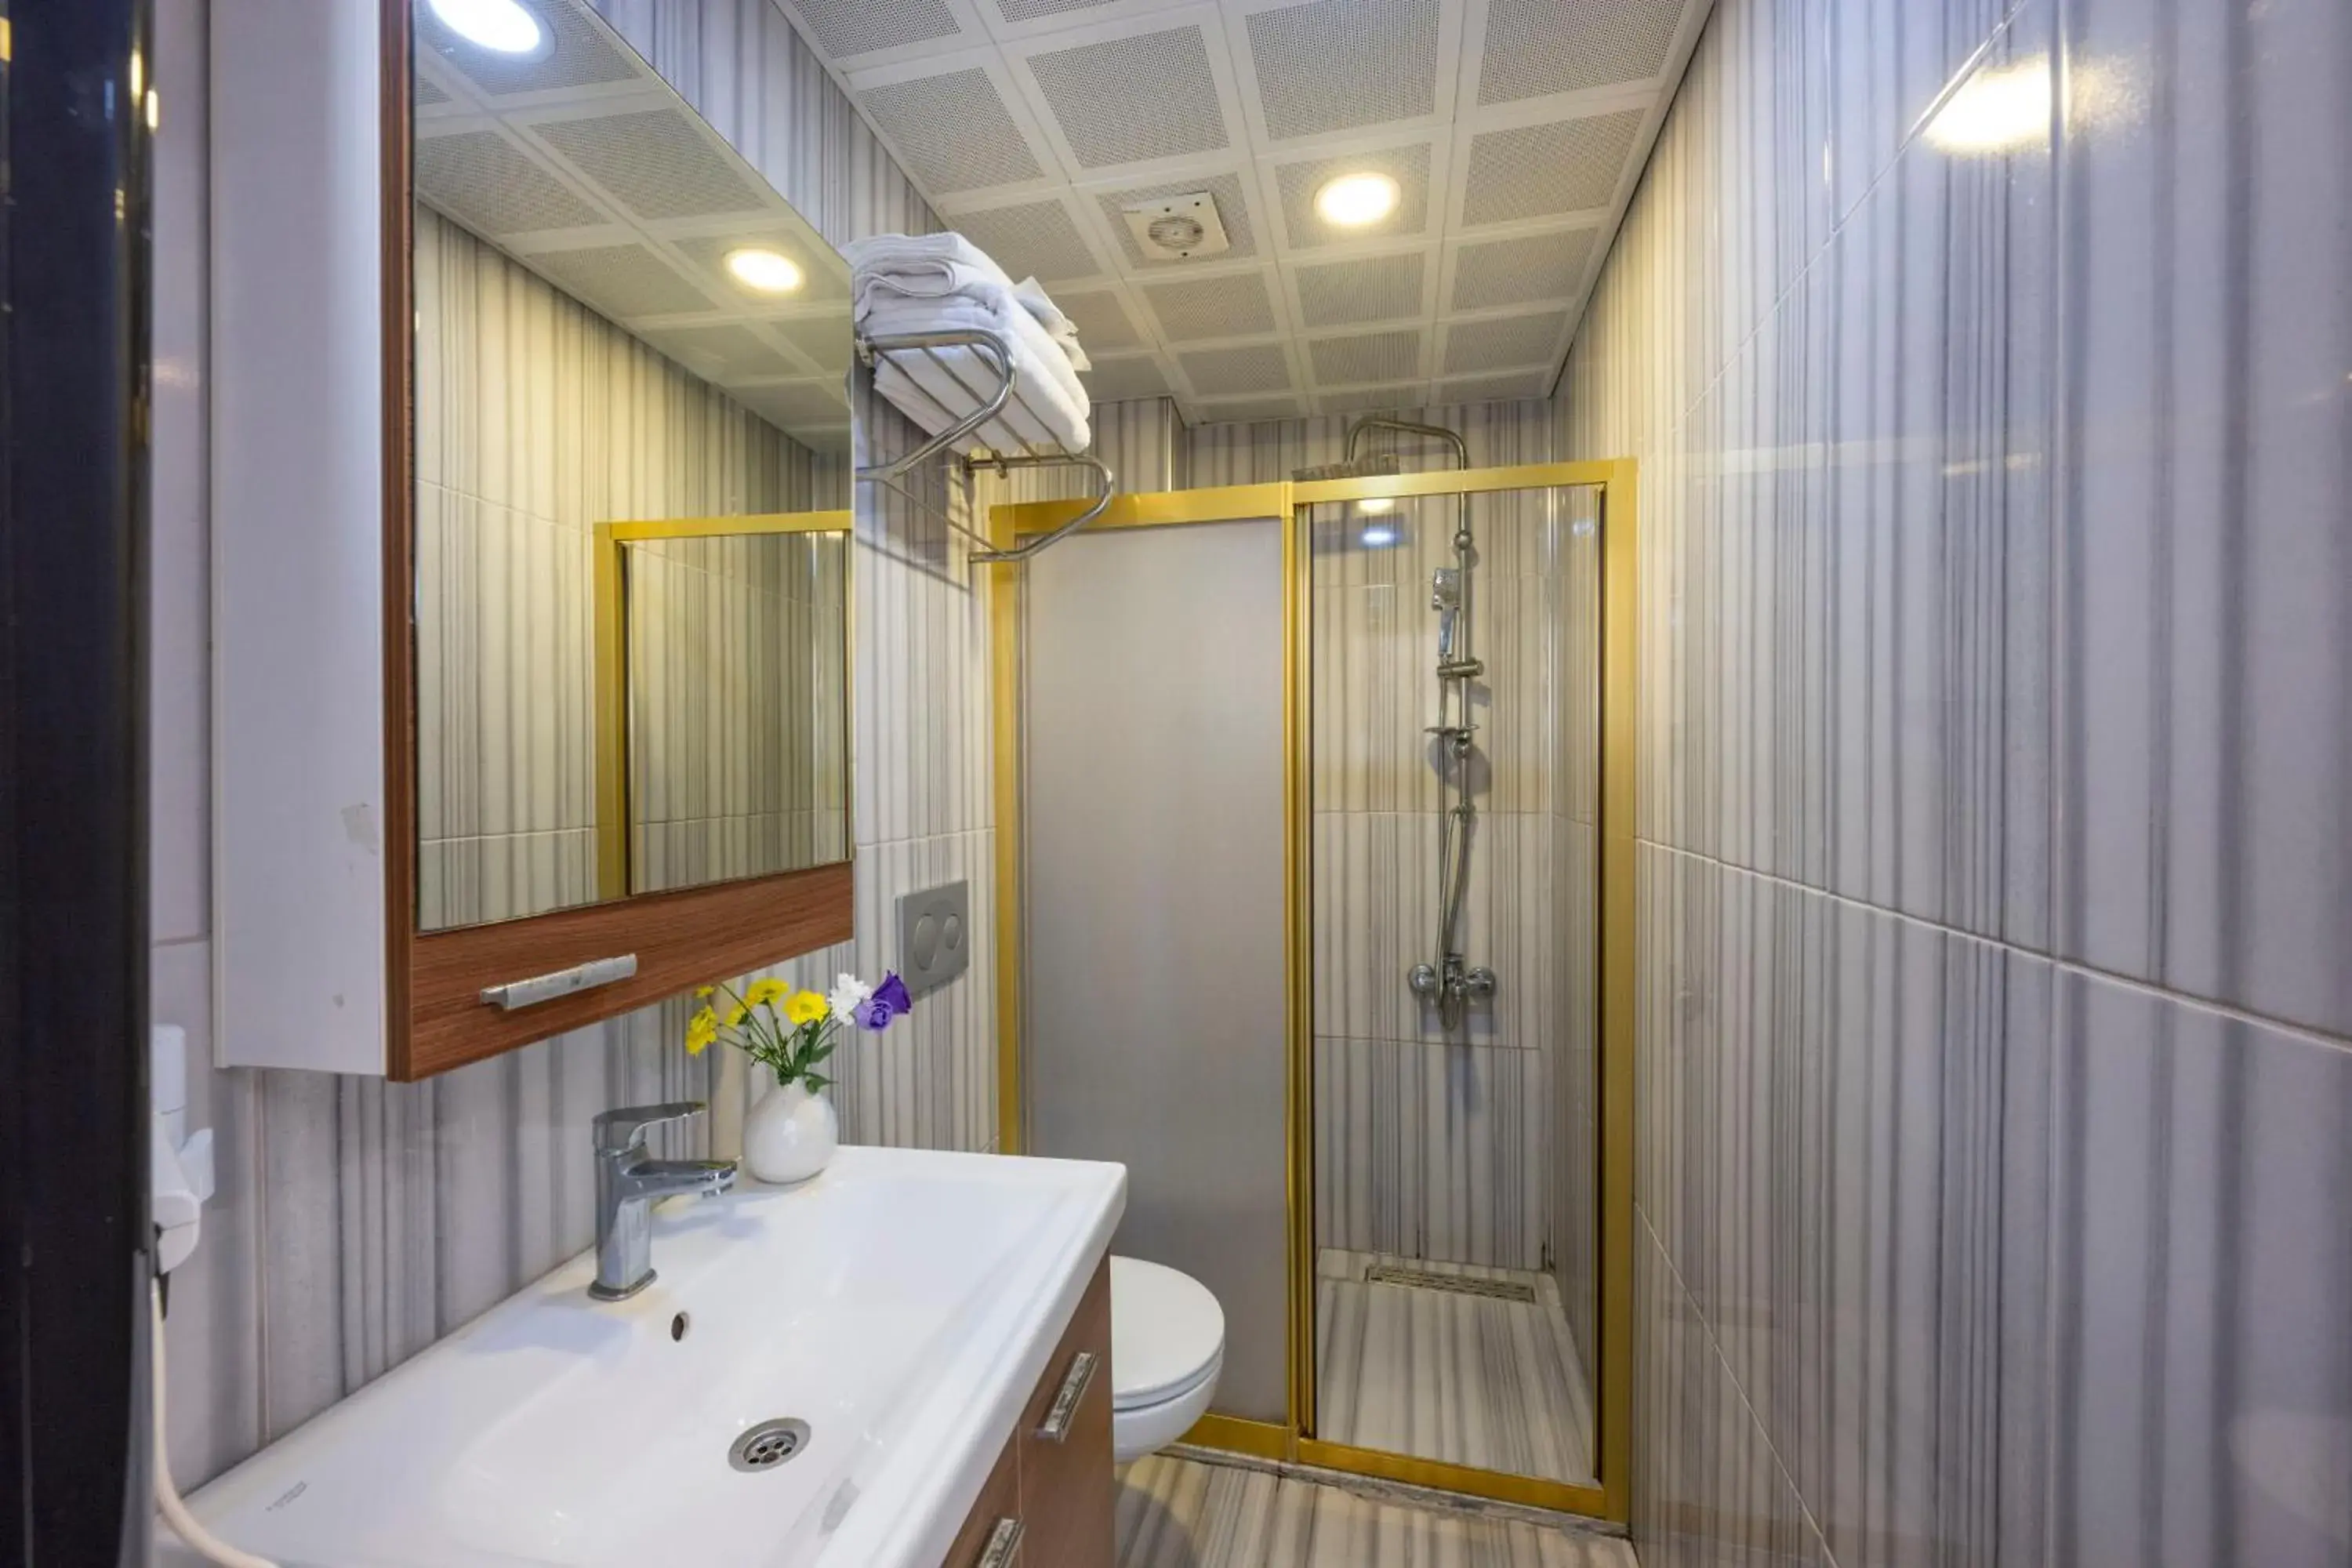 Shower, Bathroom in Best Nobel Hotel 2